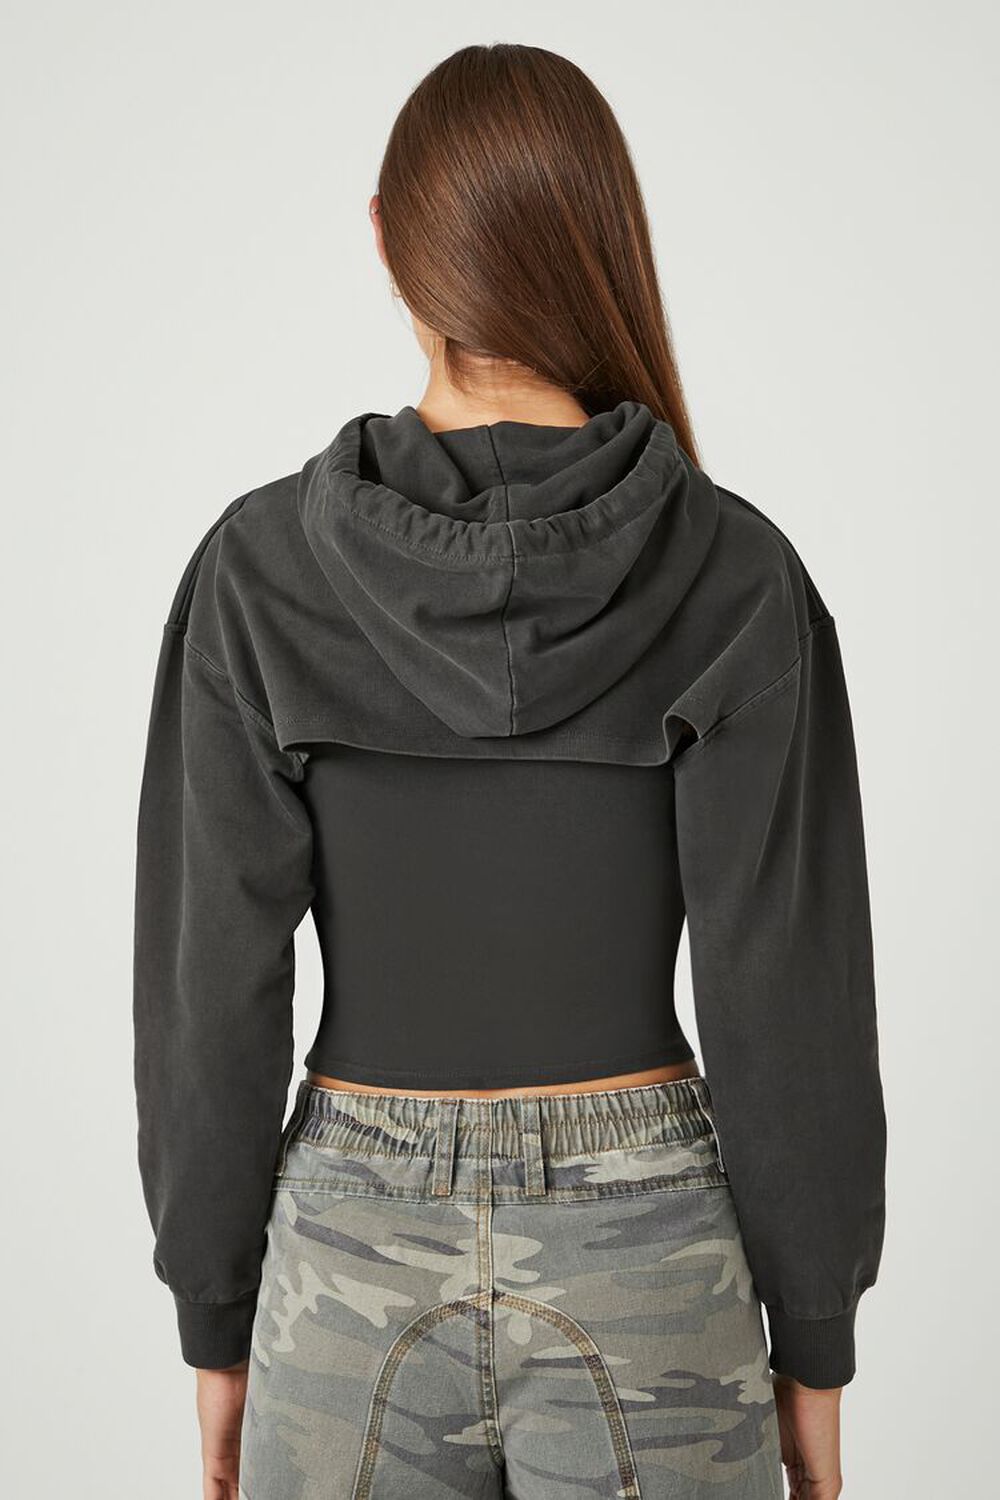 NWT Womens Forever 21 cropped drawstring black Boston sweatshirt